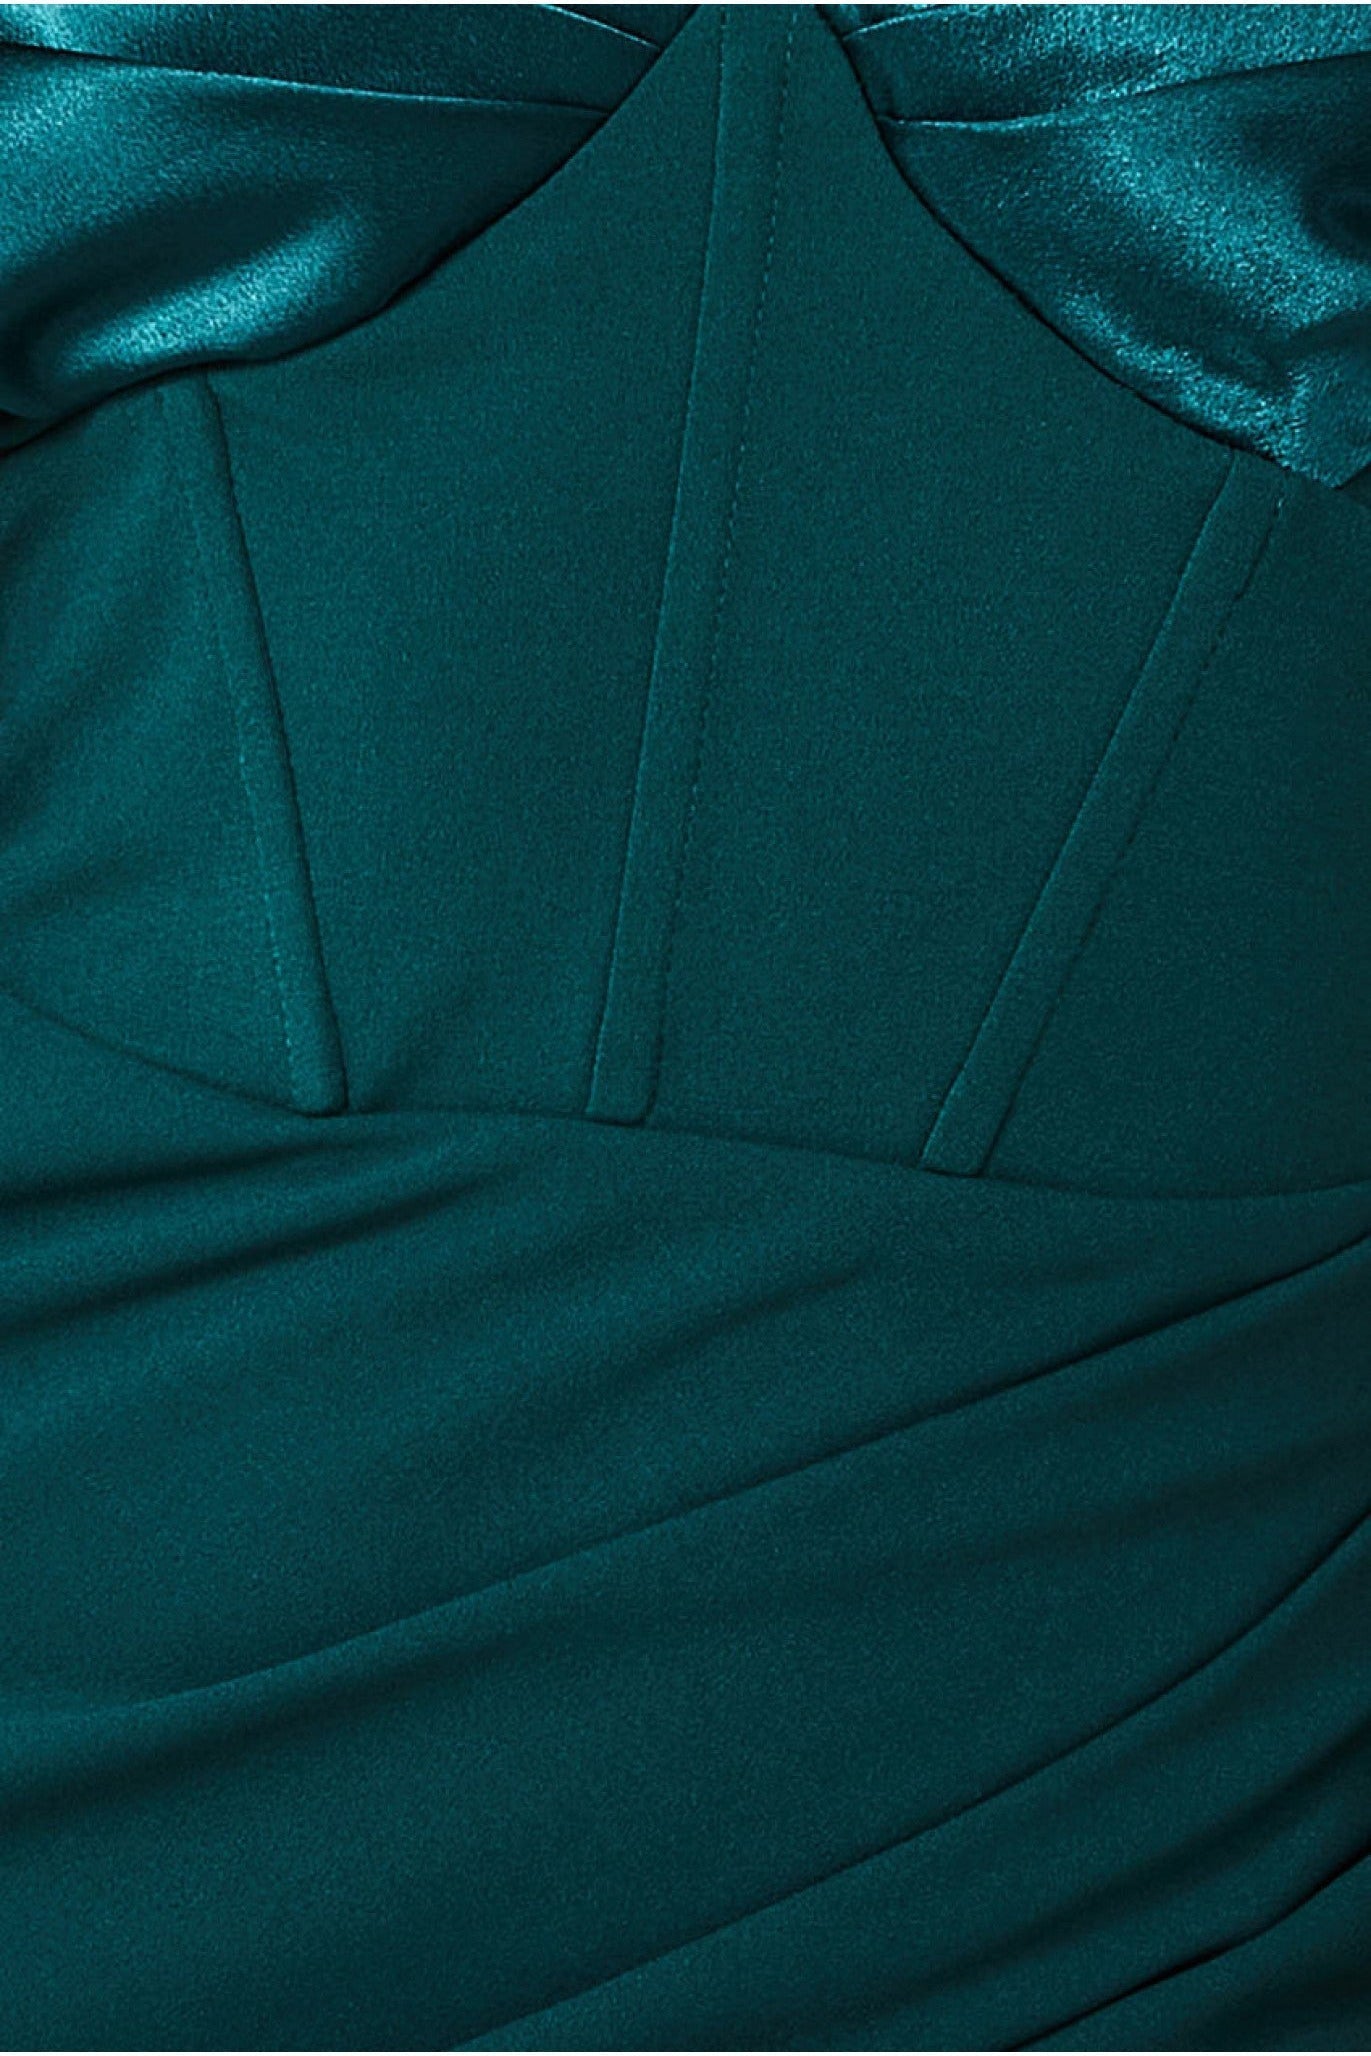 Satin & Scuba Off The Shoulder Maxi Dress - Emerald DR3460